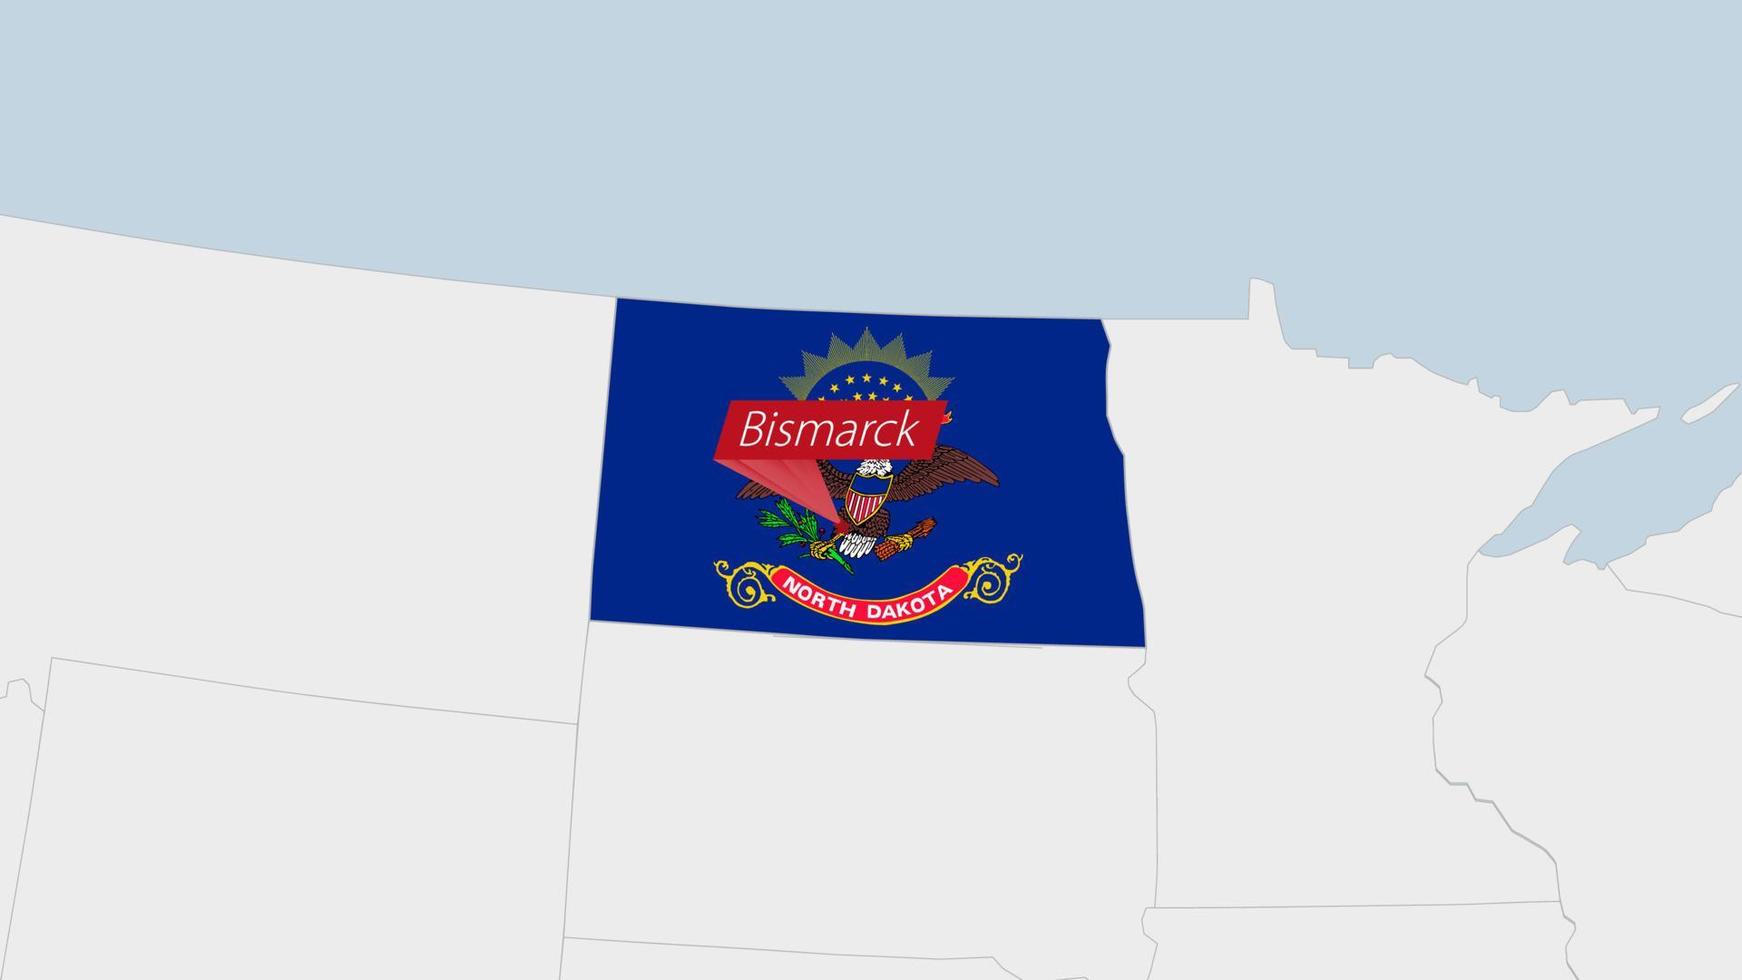 nosotros estado norte Dakota mapa destacado en norte Dakota bandera colores y alfiler de país capital bismarck vector